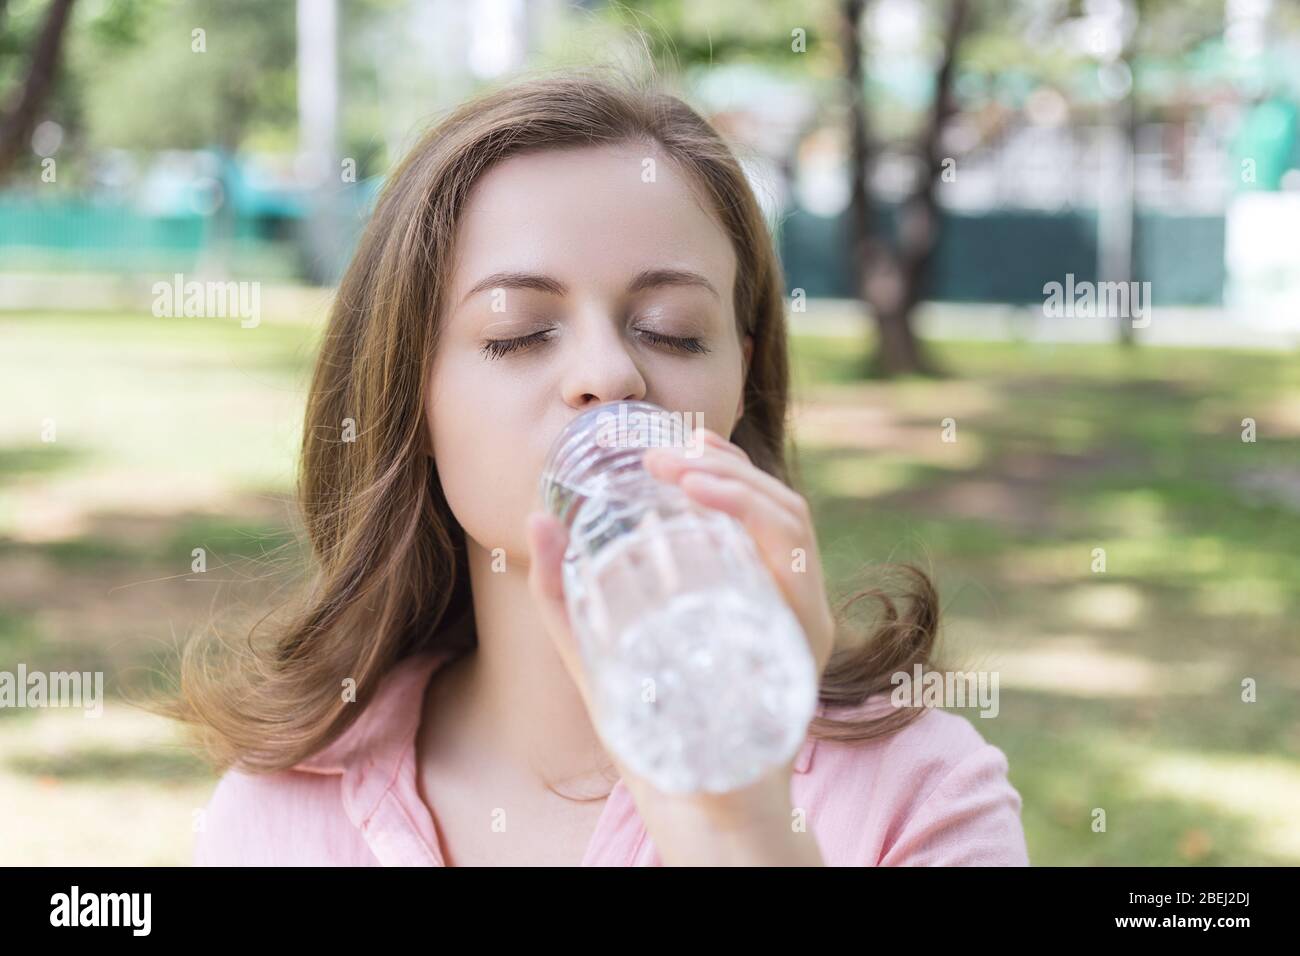 Junge kaukasische Frau Mädchen trinken Wasser aus einer Plastikflasche im grünen Park, Nahaufnahme Stockfoto